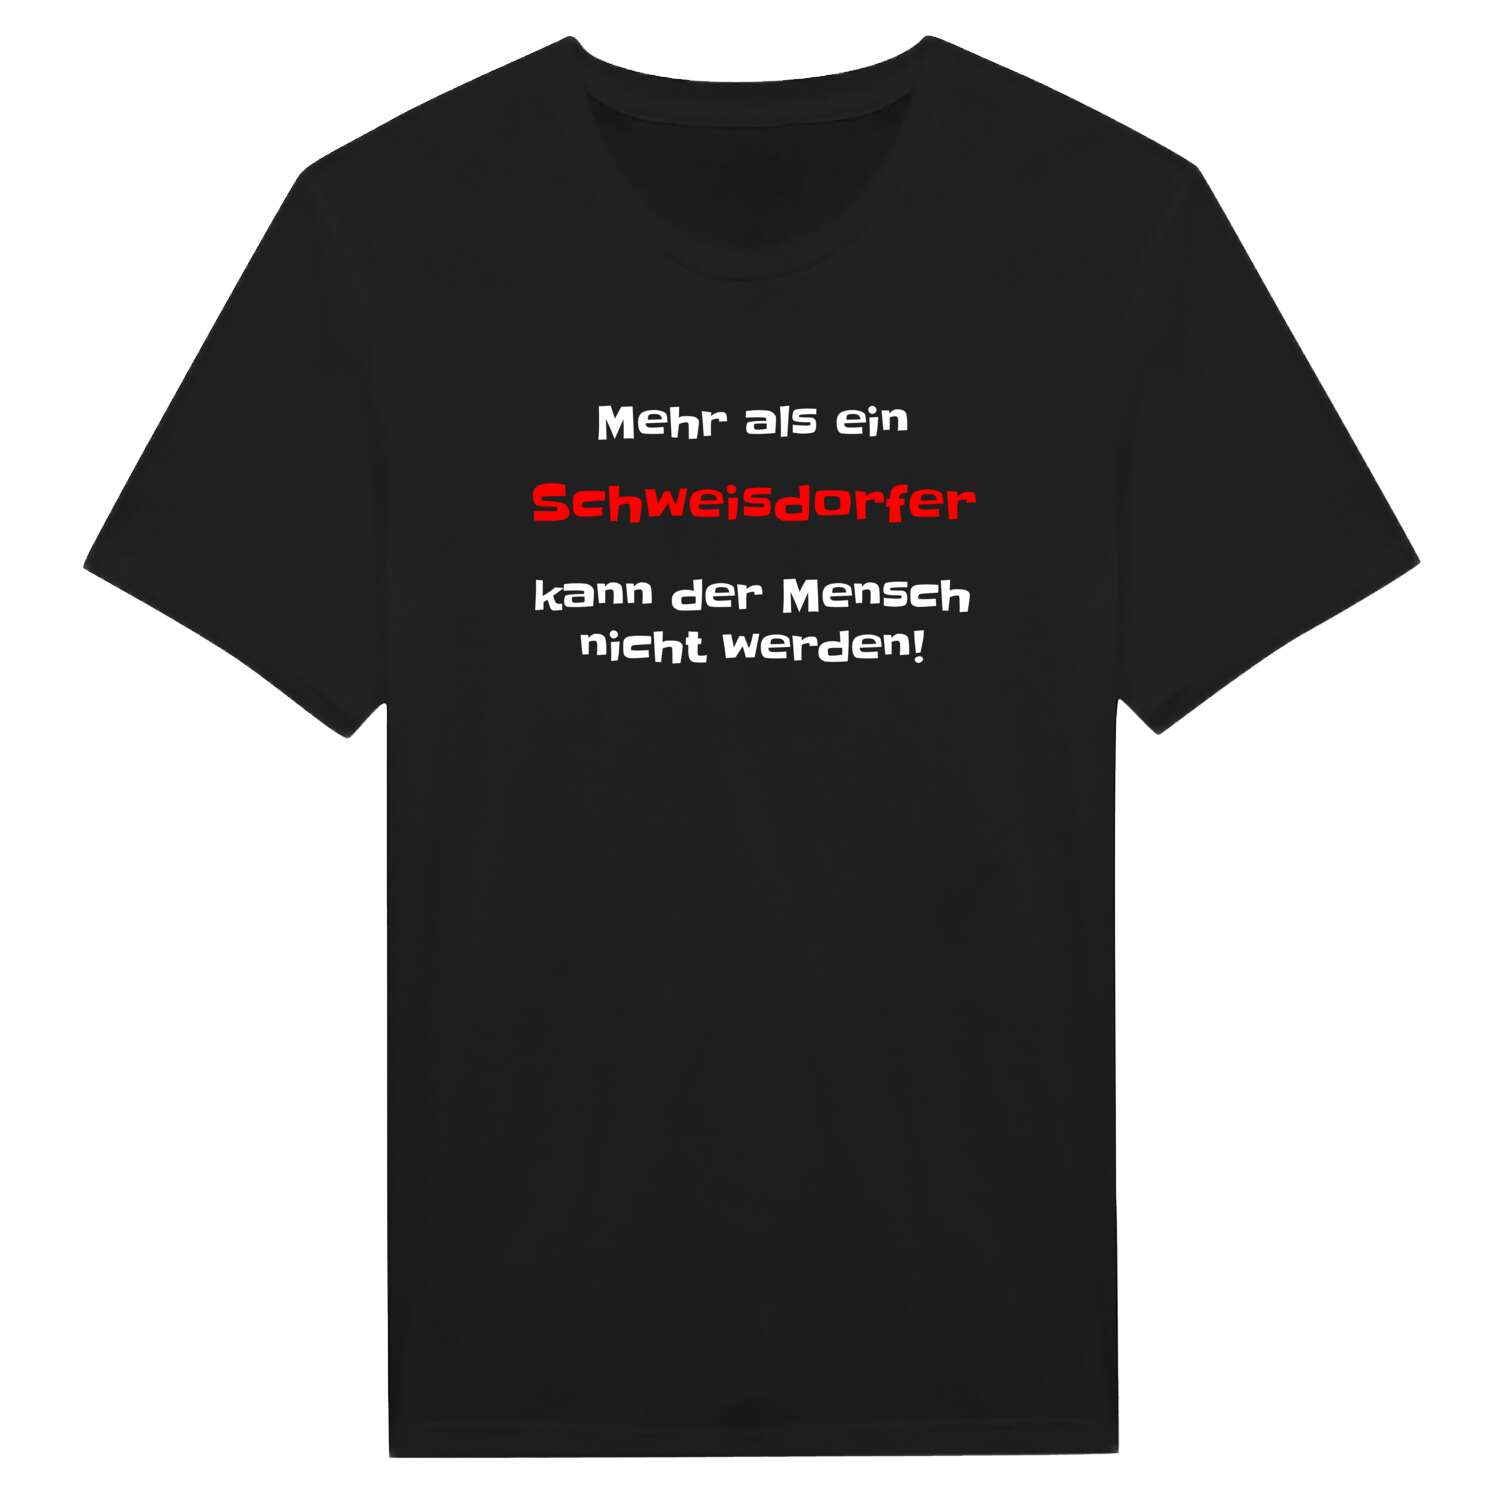 Schweisdorf T-Shirt »Mehr als ein«